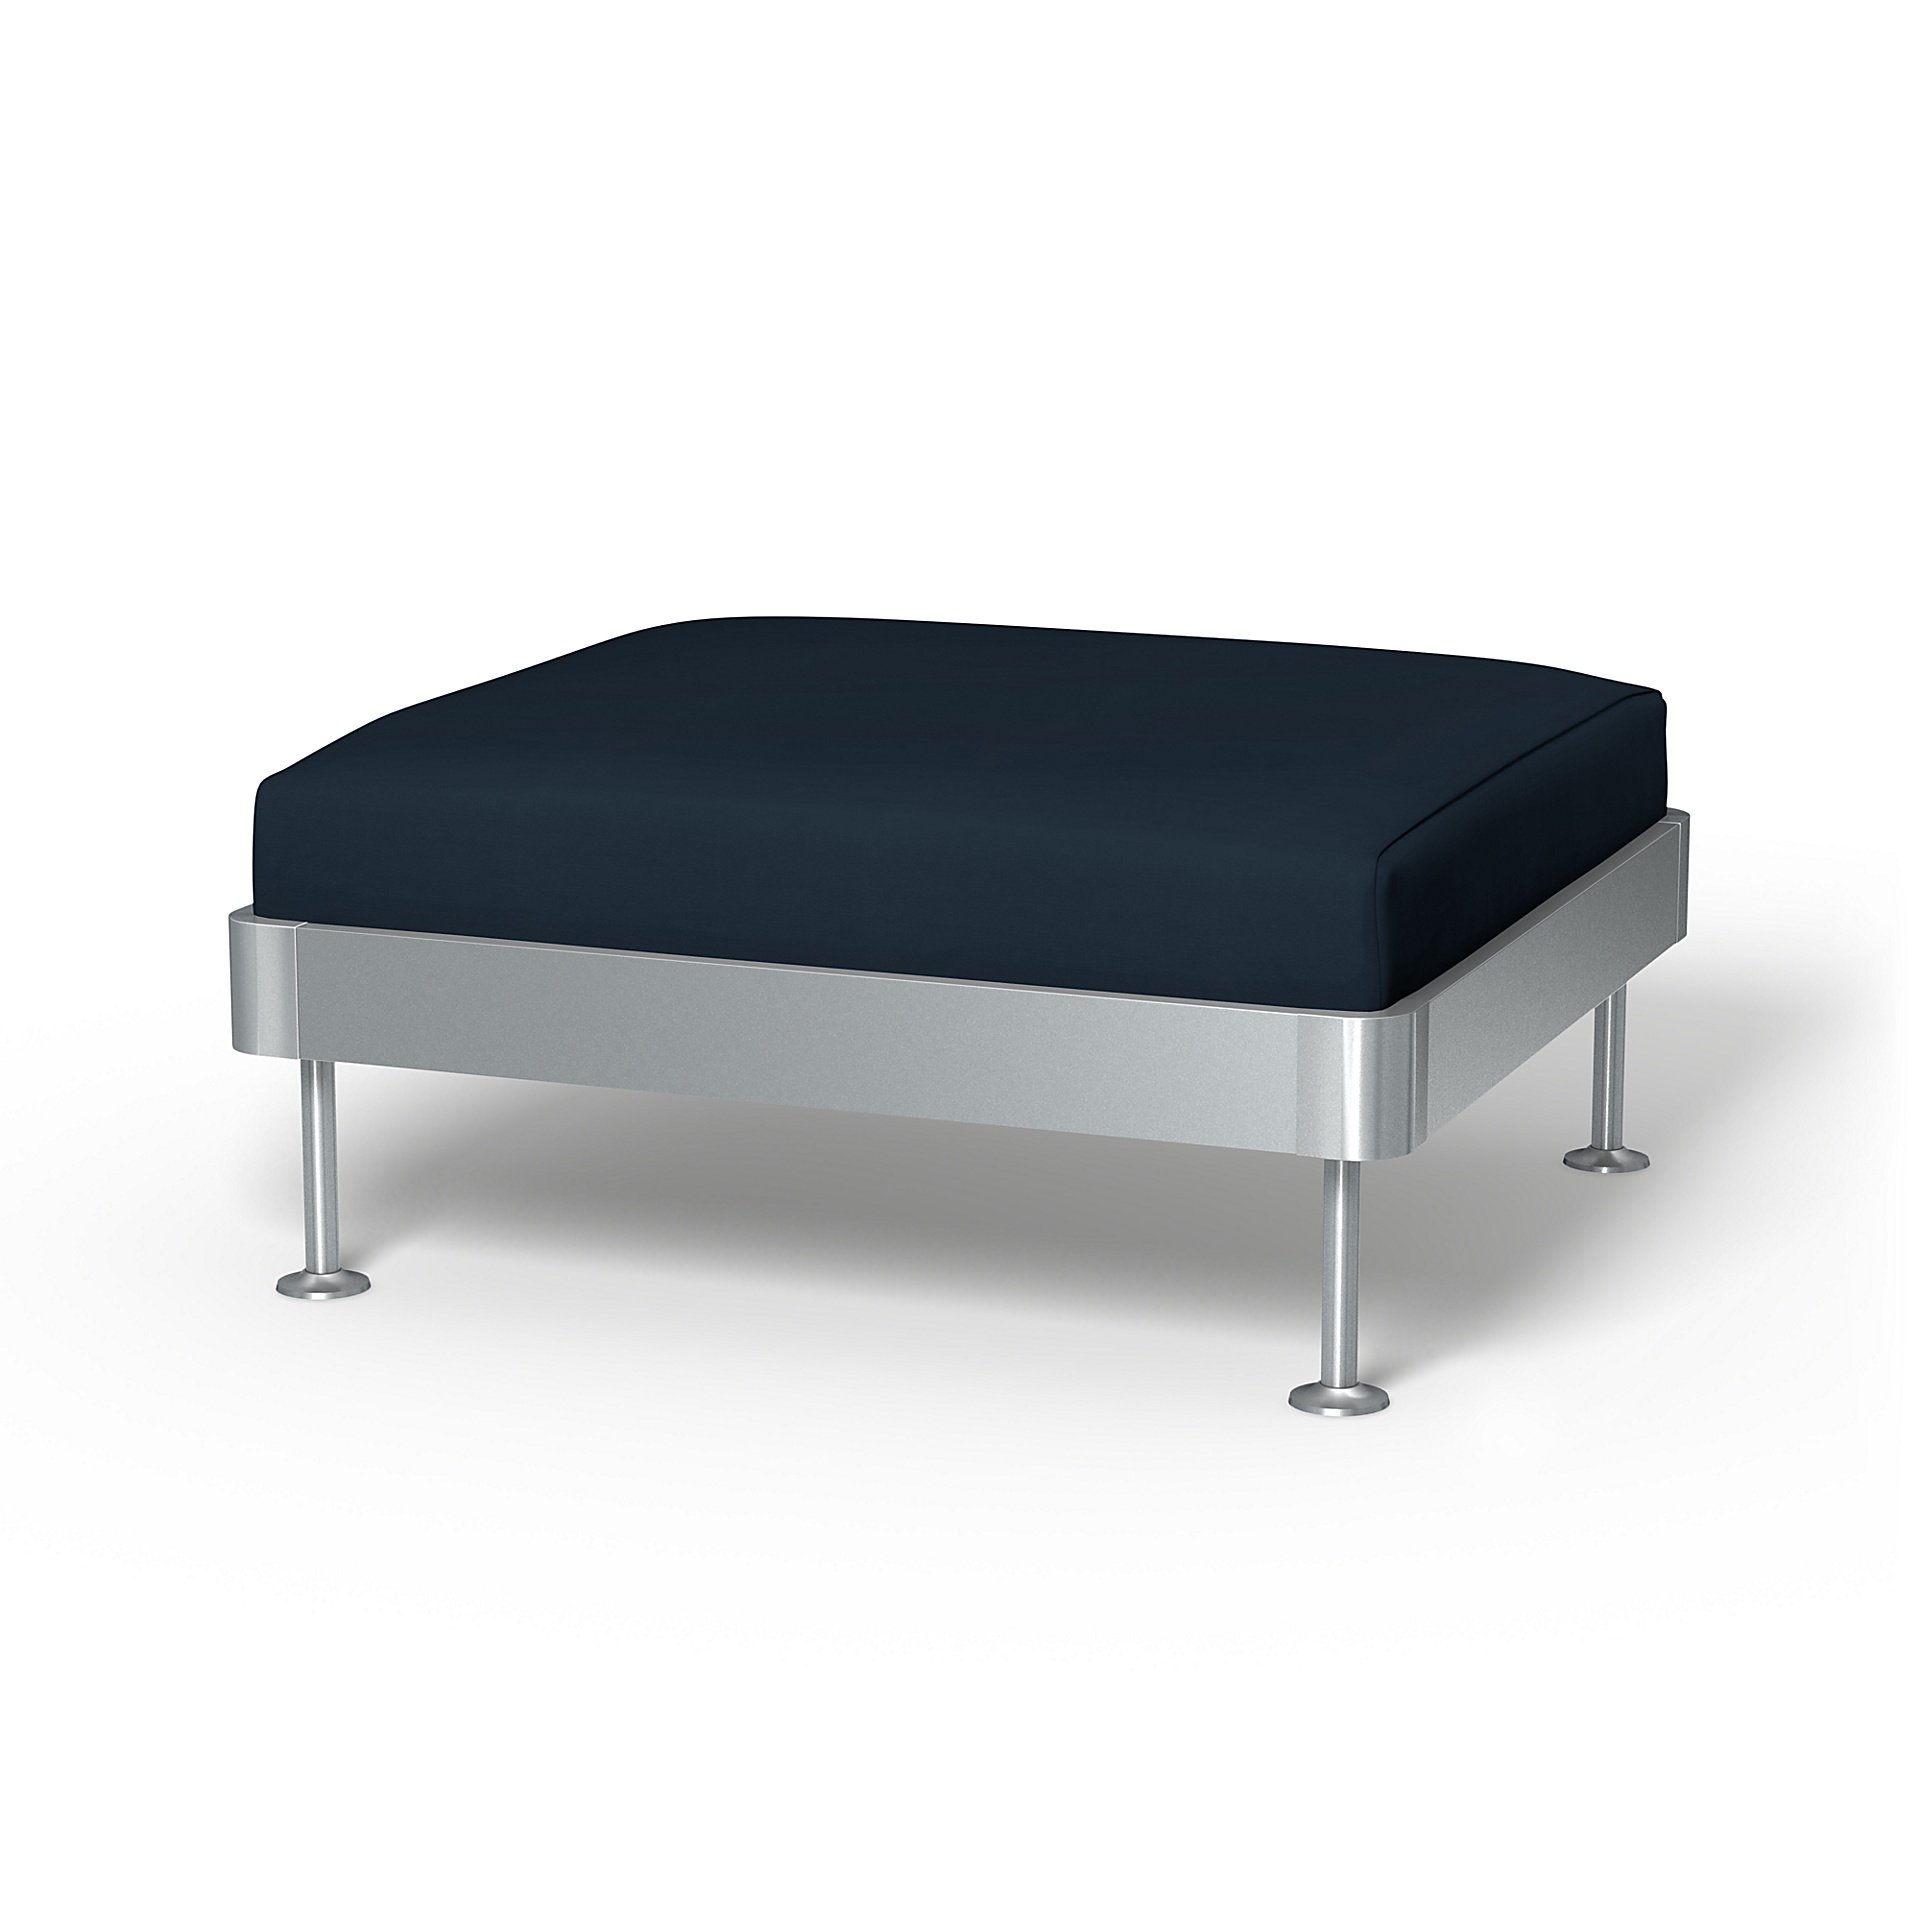 IKEA - Delaktig 1 Seat Platform Cover, Navy Blue, Cotton - Bemz